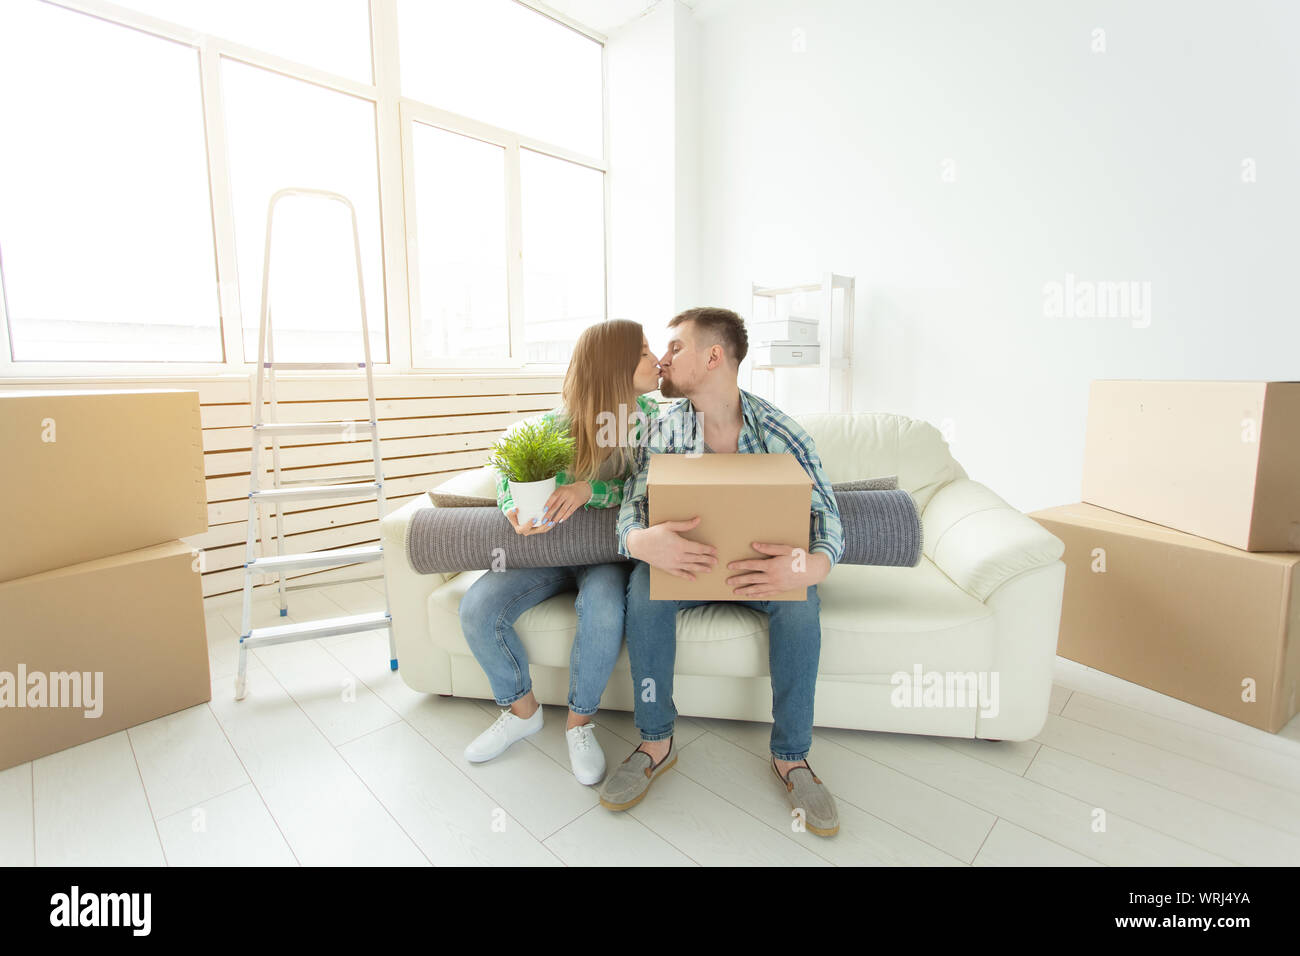 Déménagement et concept immobilier - Happy couple on sofa dans leur nouvel appartement Banque D'Images